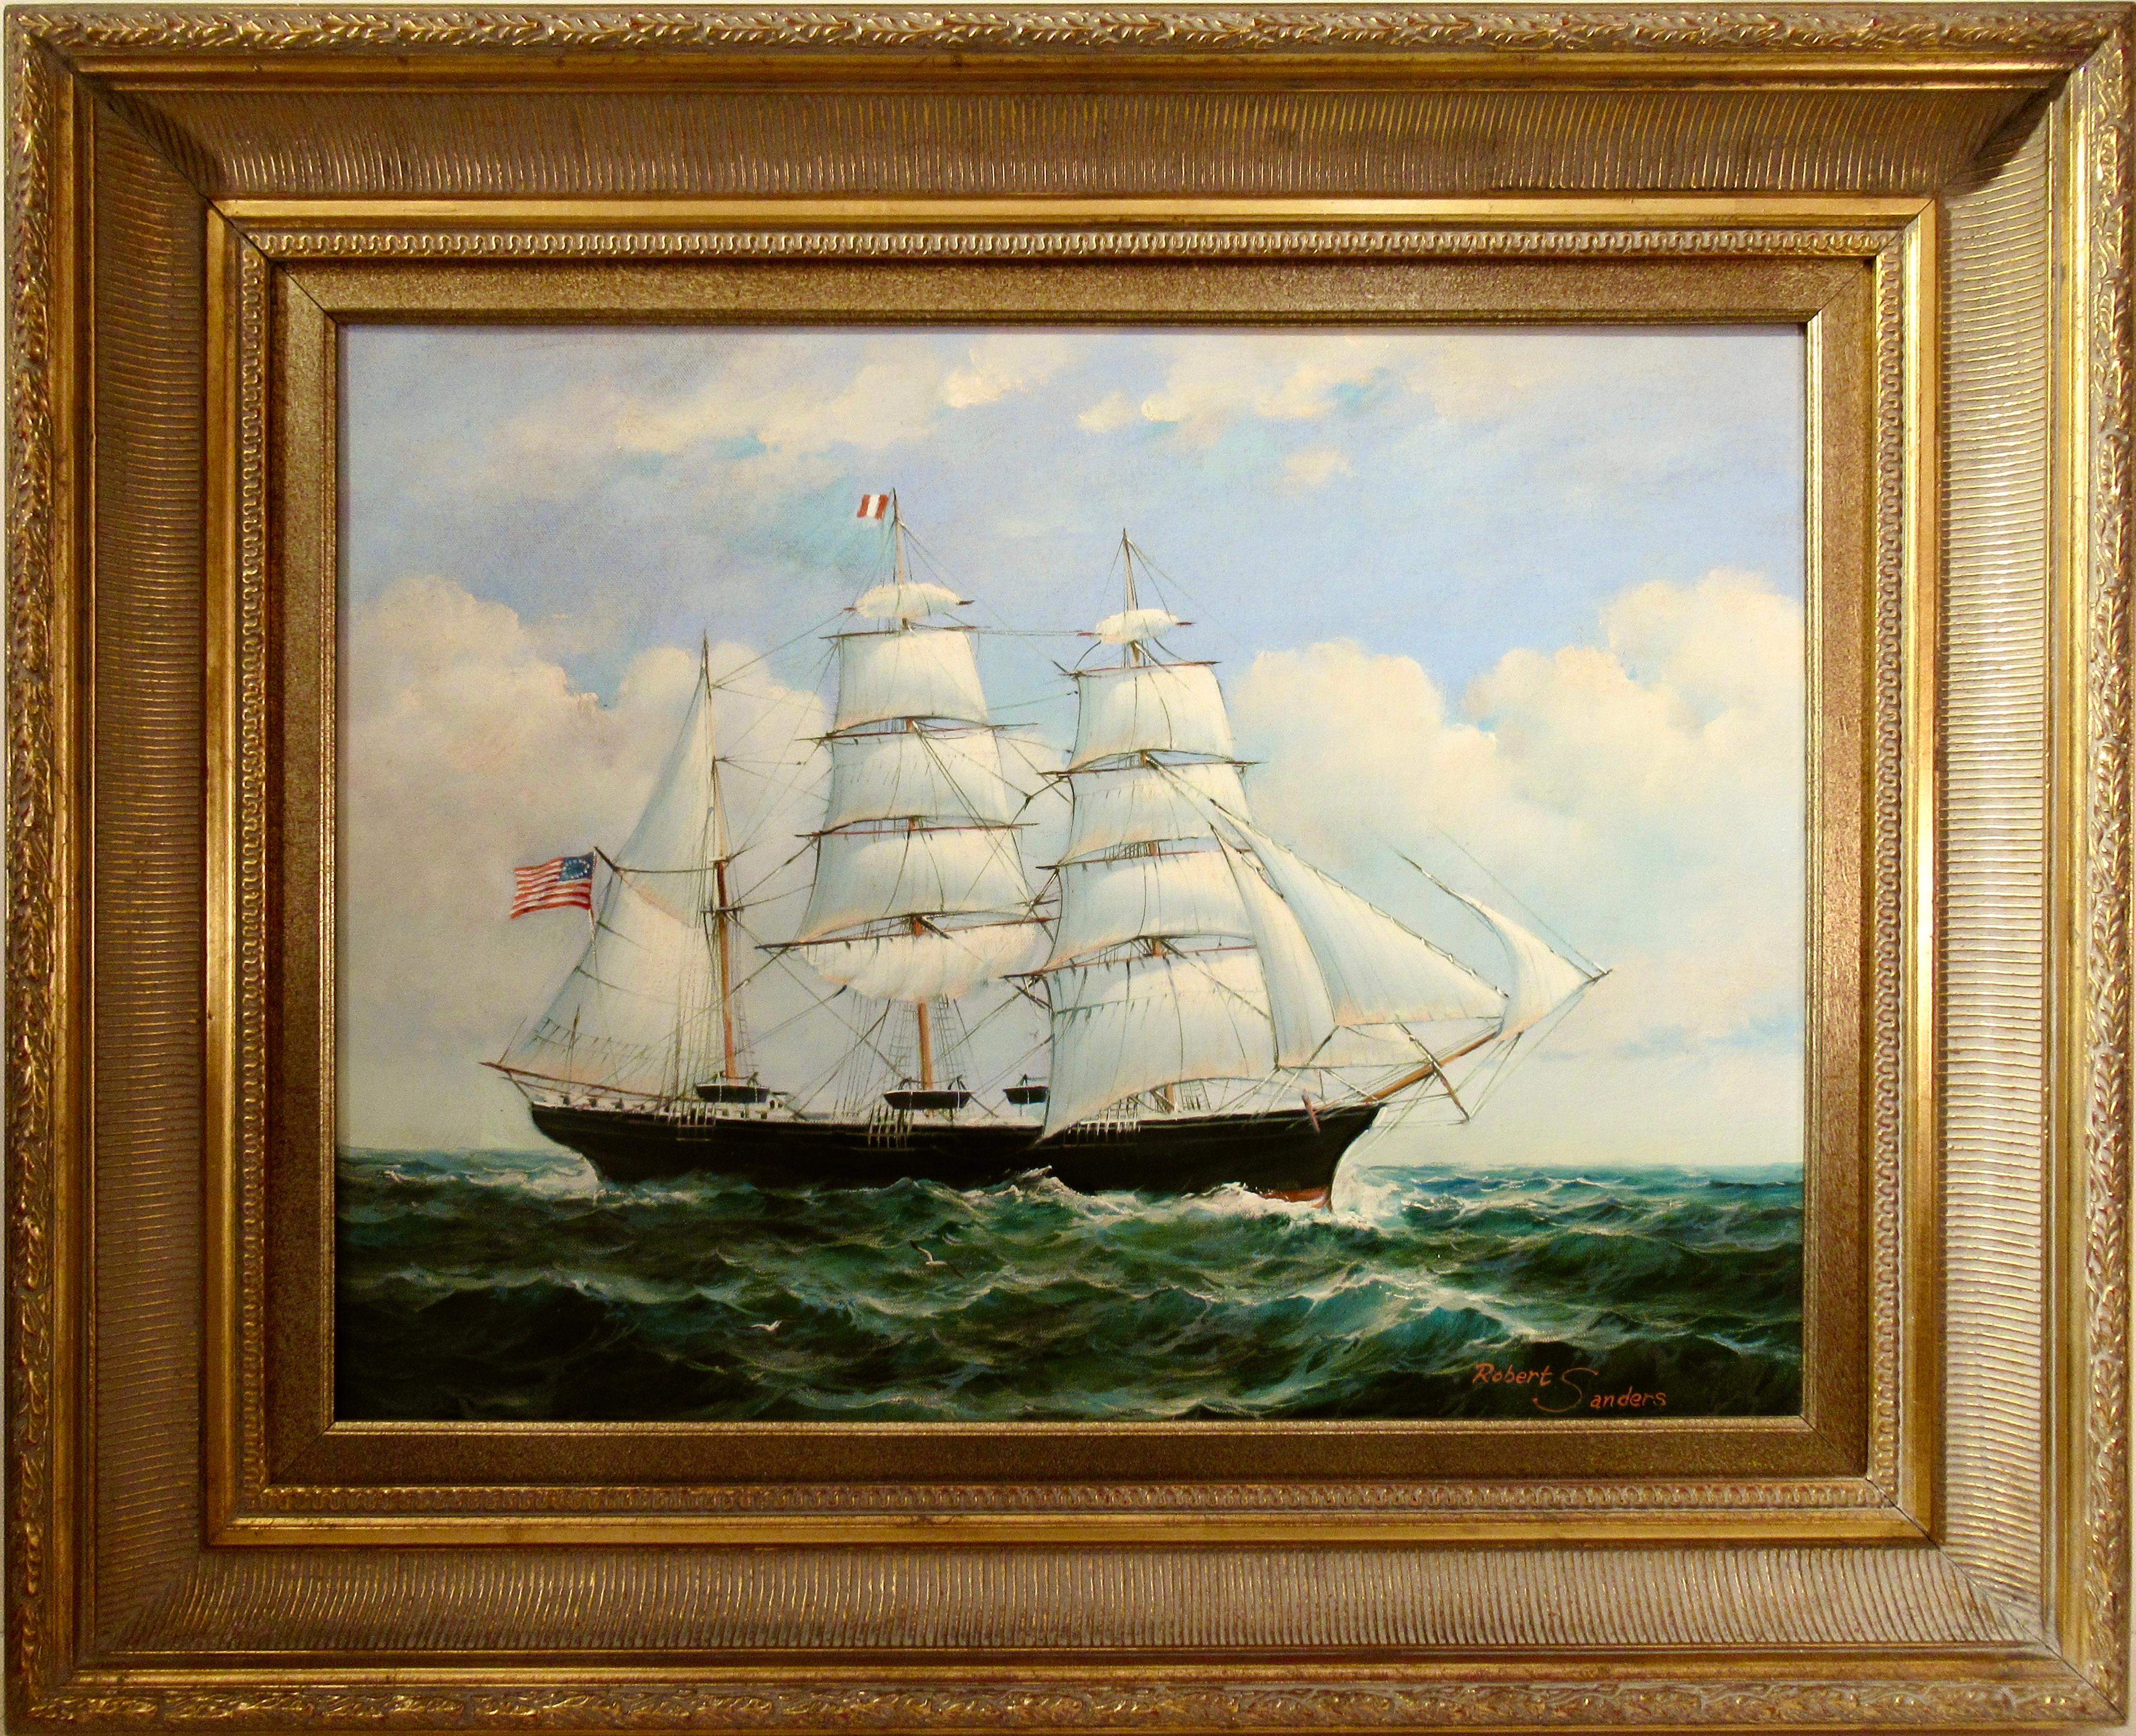 Figurative Painting Robert Sanders - American Clipper en mer